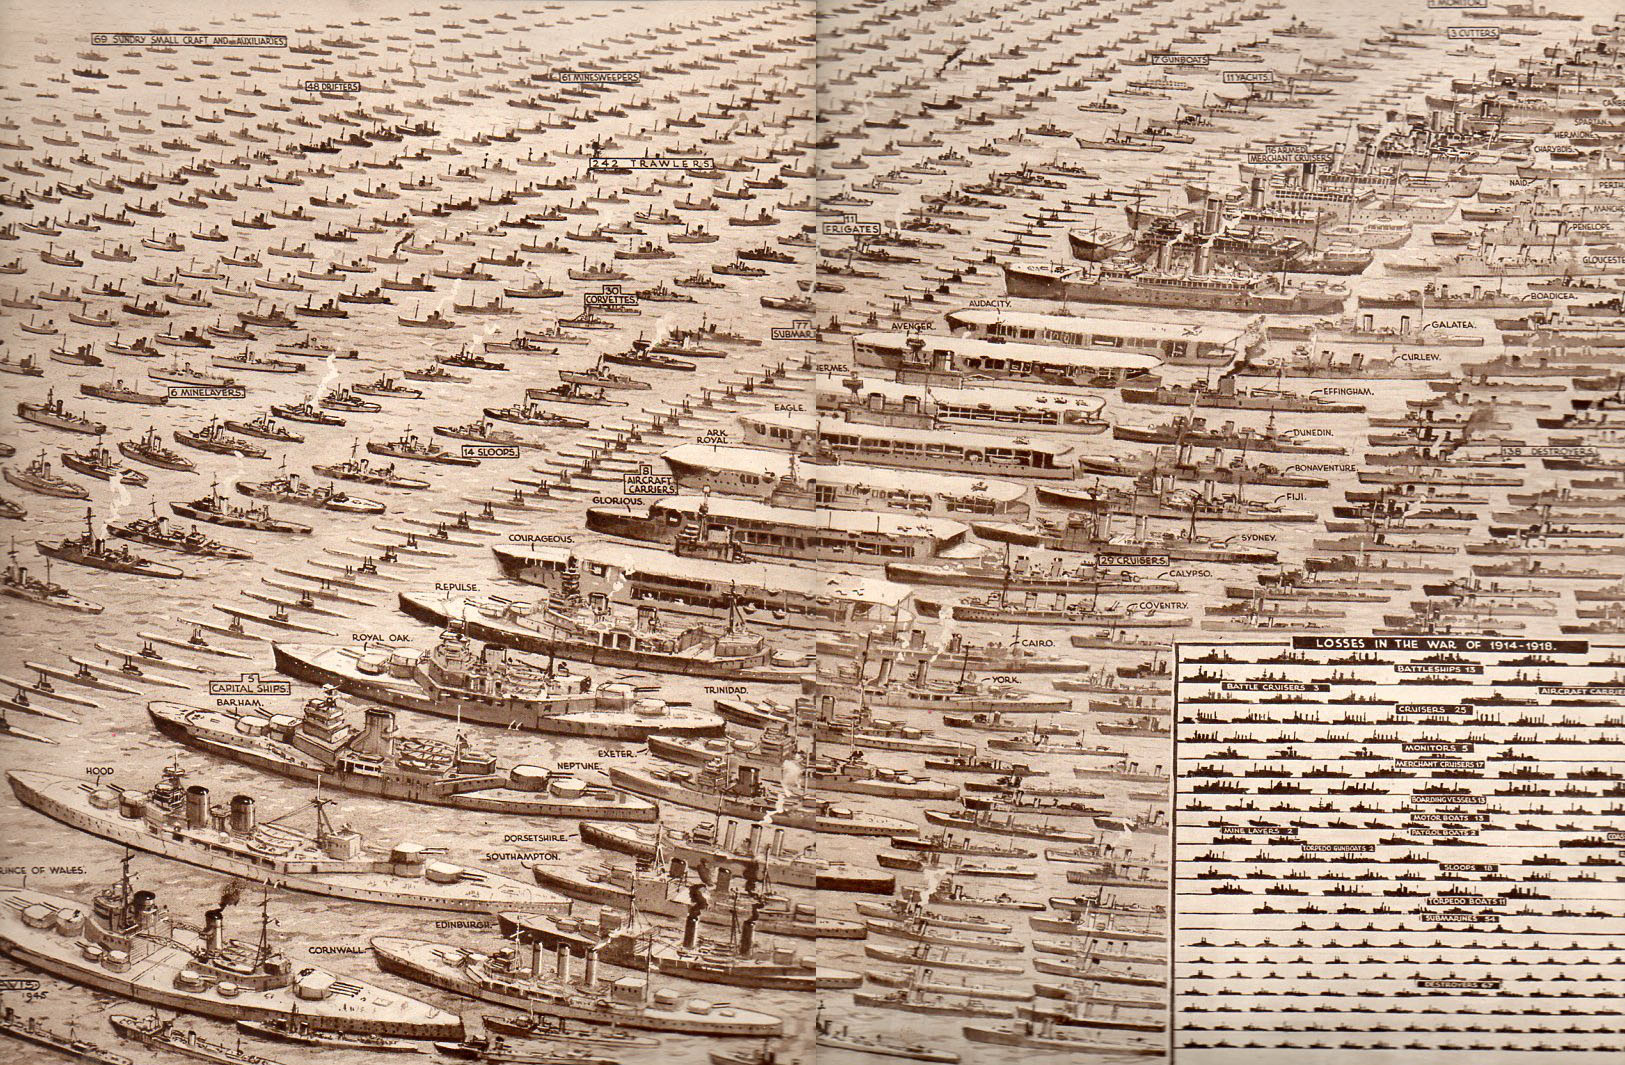 Les bateaux perdus par l’Angleterre pendant la seconde guerre mondiale